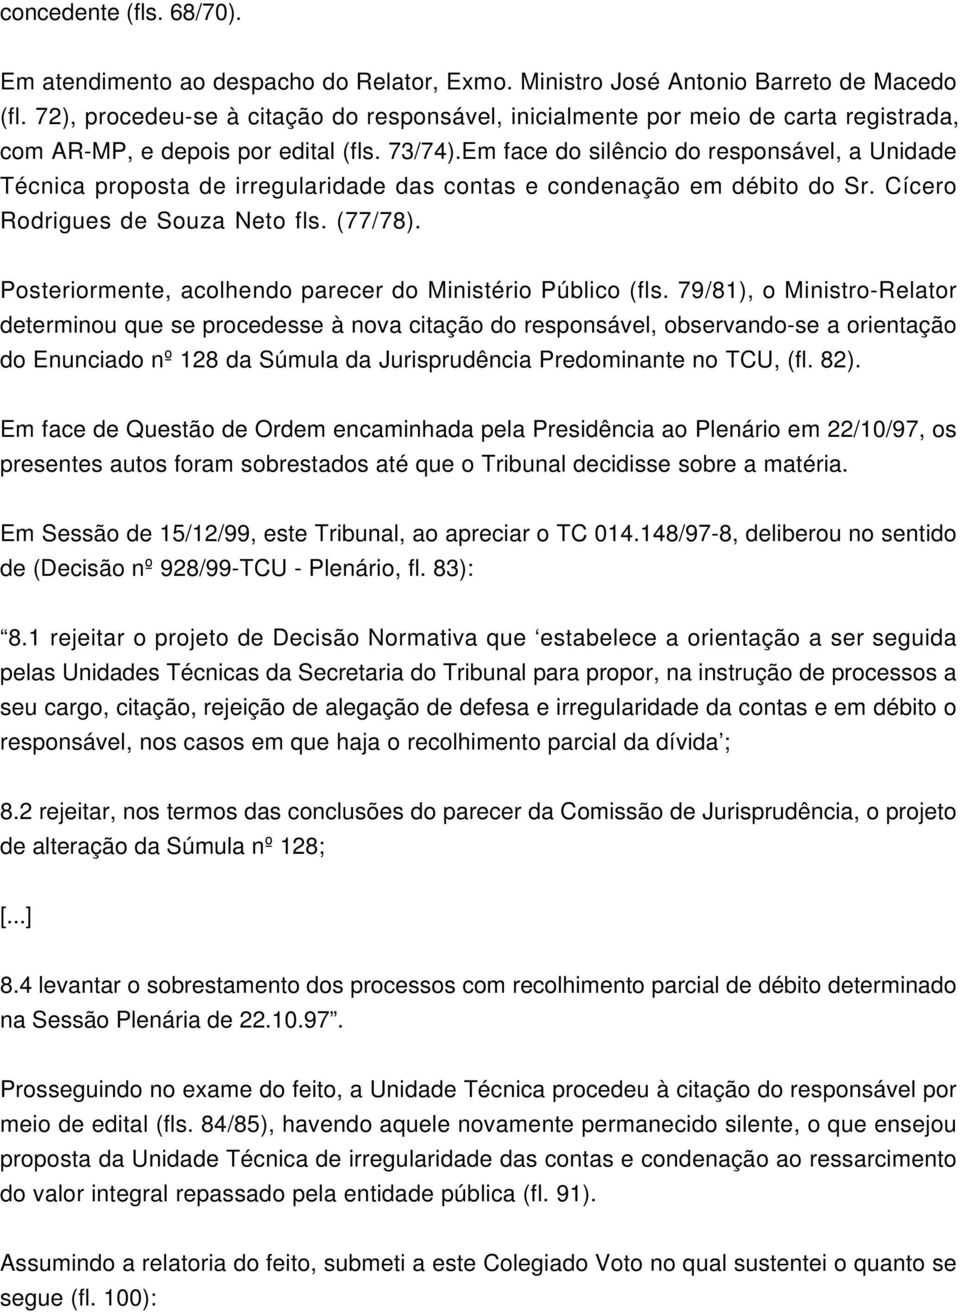 Em face do silêncio do responsável, a Unidade Técnica proposta de irregularidade das contas e condenação em débito do Sr. Cícero Rodrigues de Souza Neto fls. (77/78).